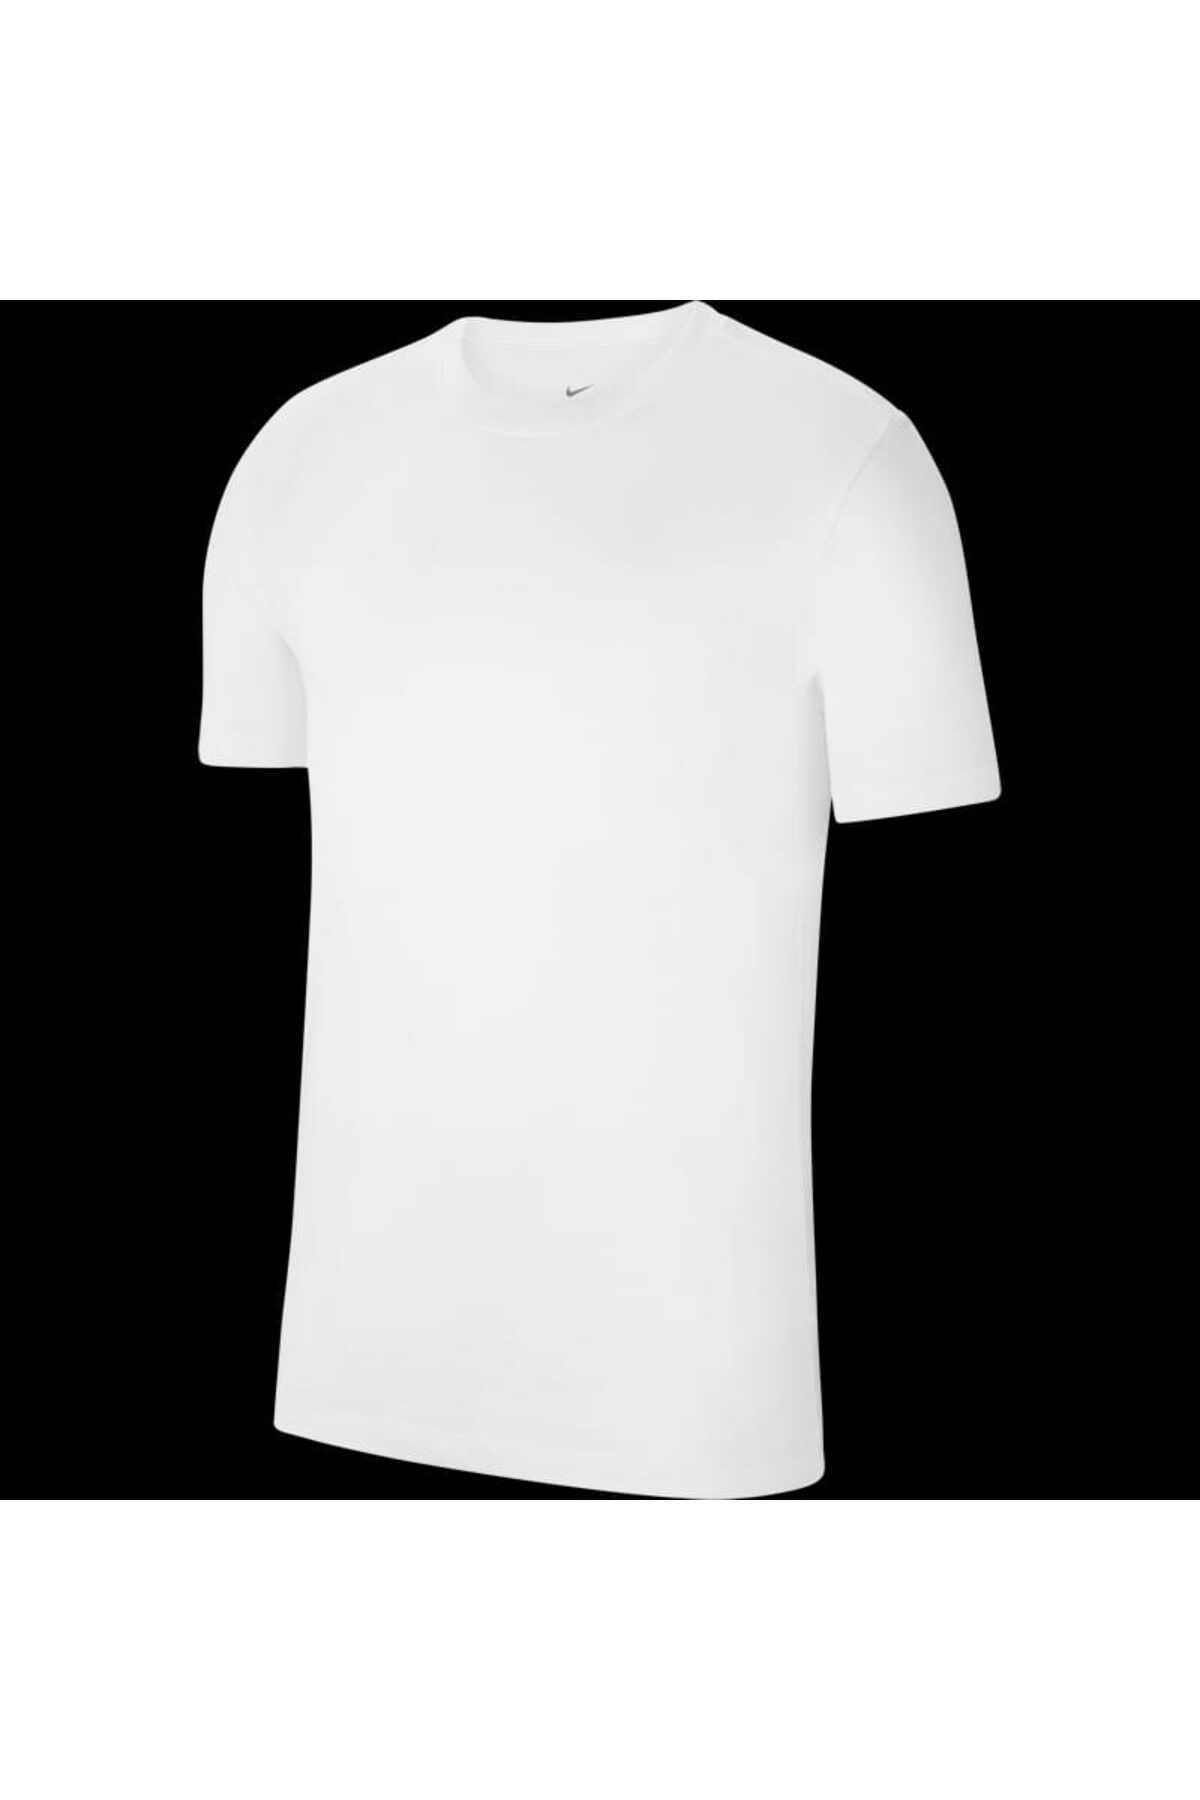 Nike Erkek Spor T-Shirt - Team Park - CZ0881-100